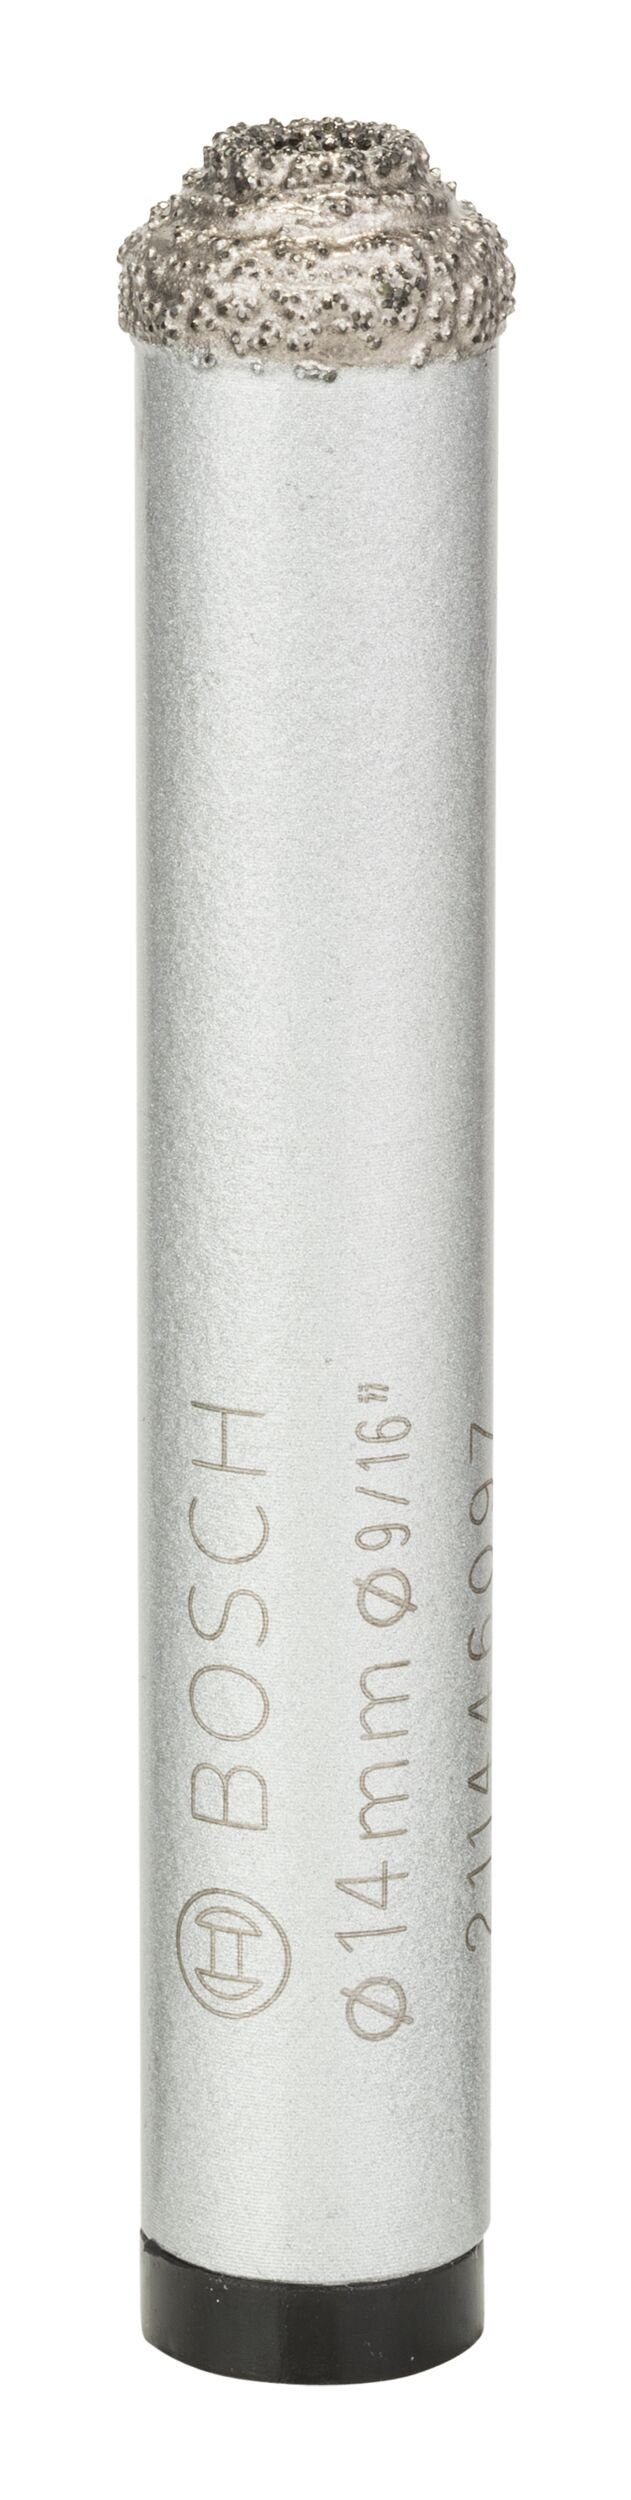 BOSCH Diamanttrockenbohrer, Ø 14 mm, Easy Dry Best for Ceramic - 14 x 33 mm